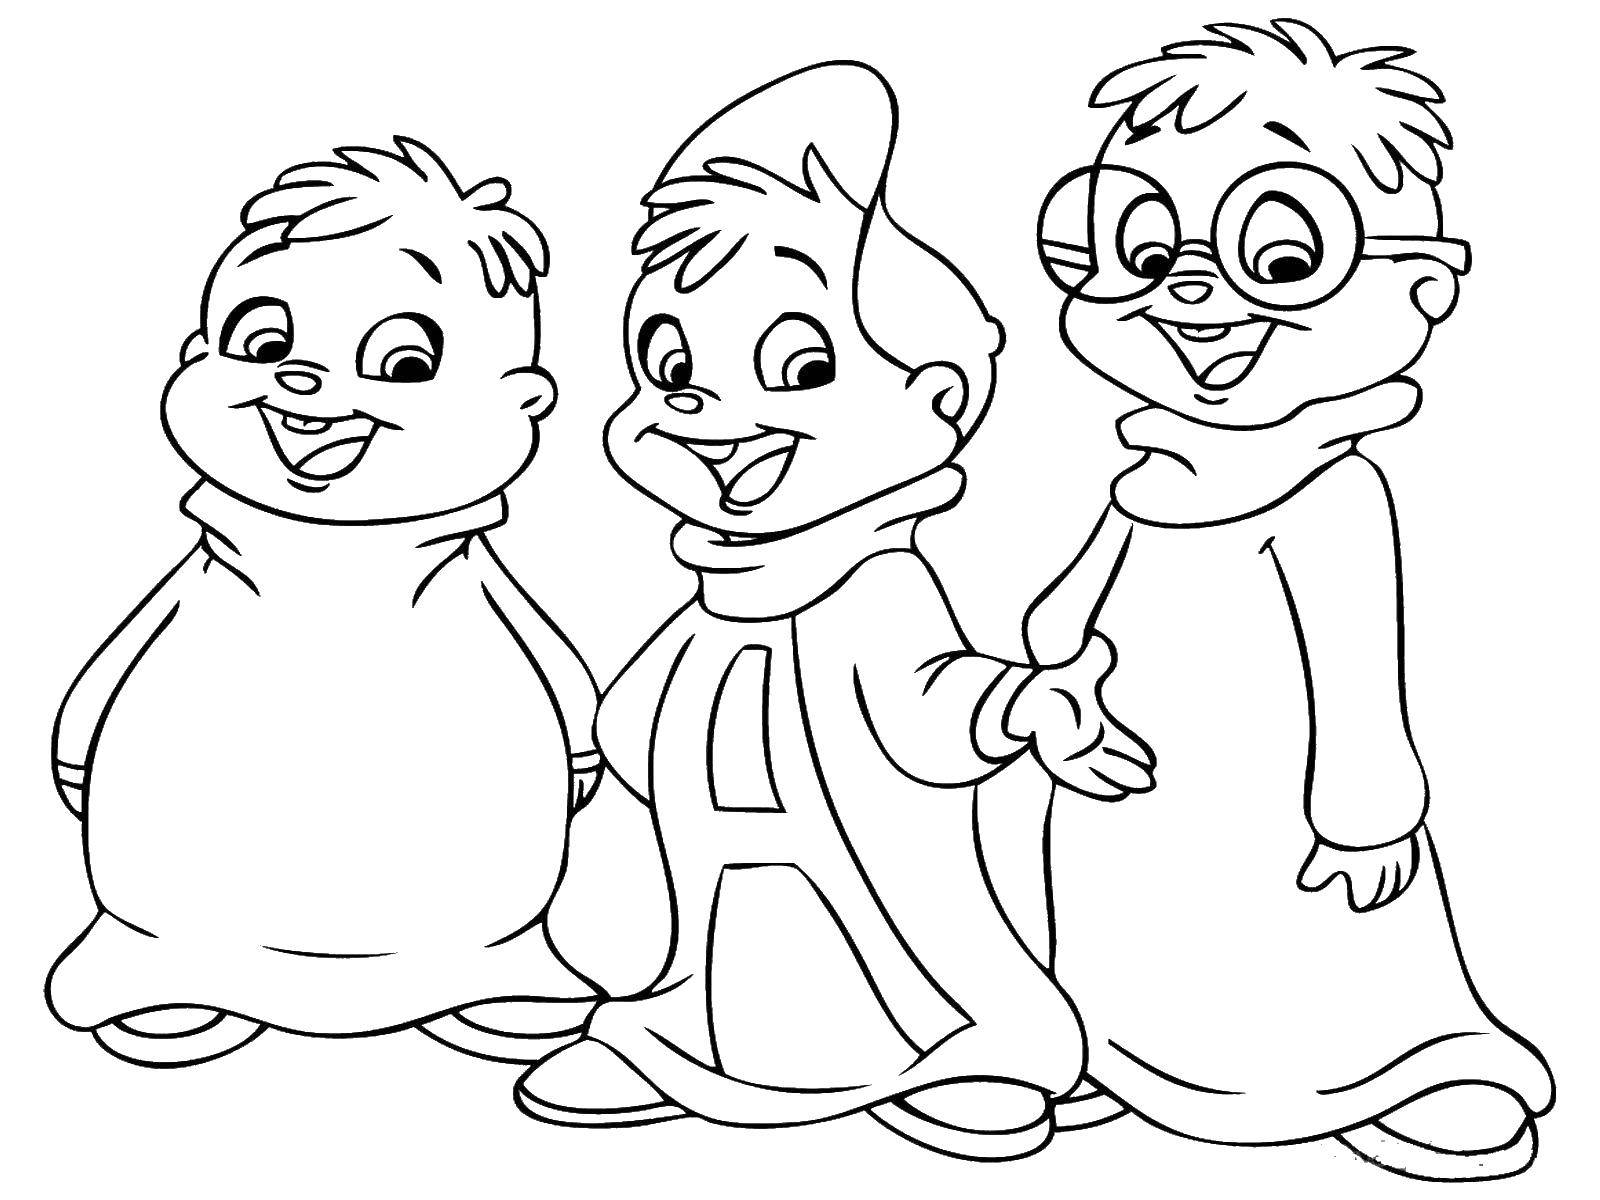 Опис: розмальовки  Елвін і його брати бурундуки. Категорія: мультики. Теги:  елвін, бурундуки.